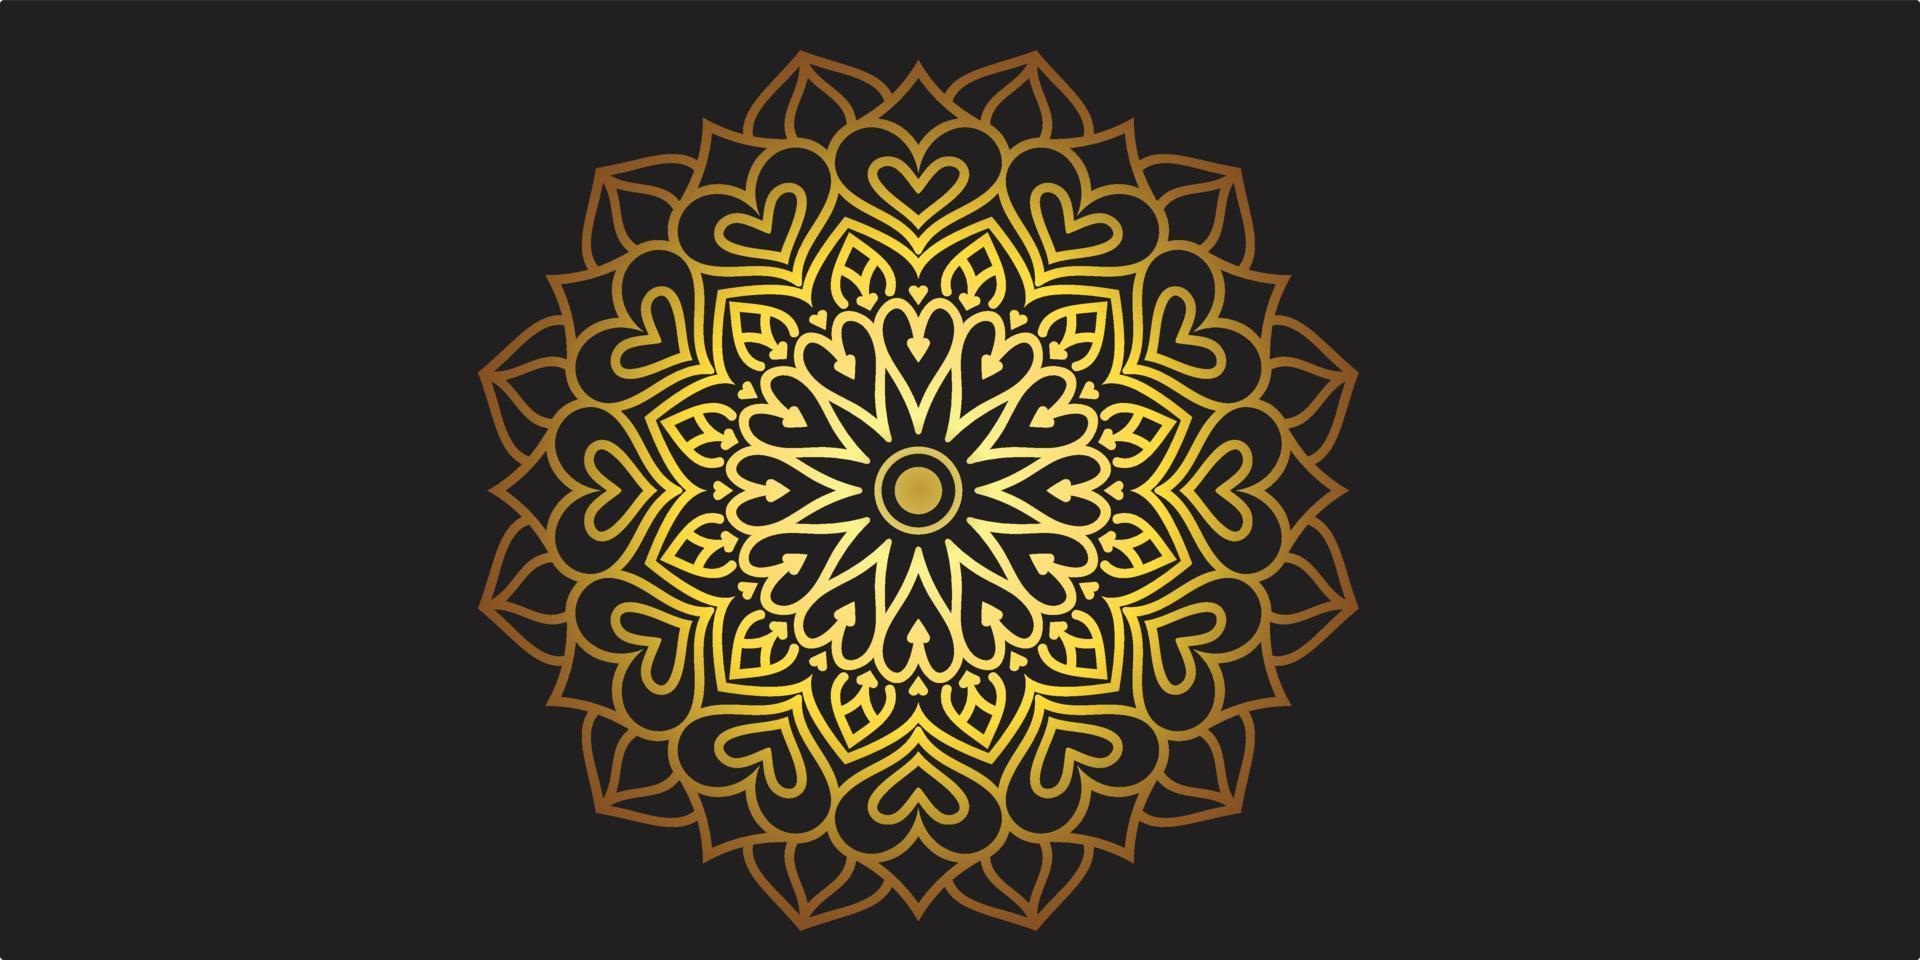 luxe gouden mandala achtergrond ontwerpsjabloon vector